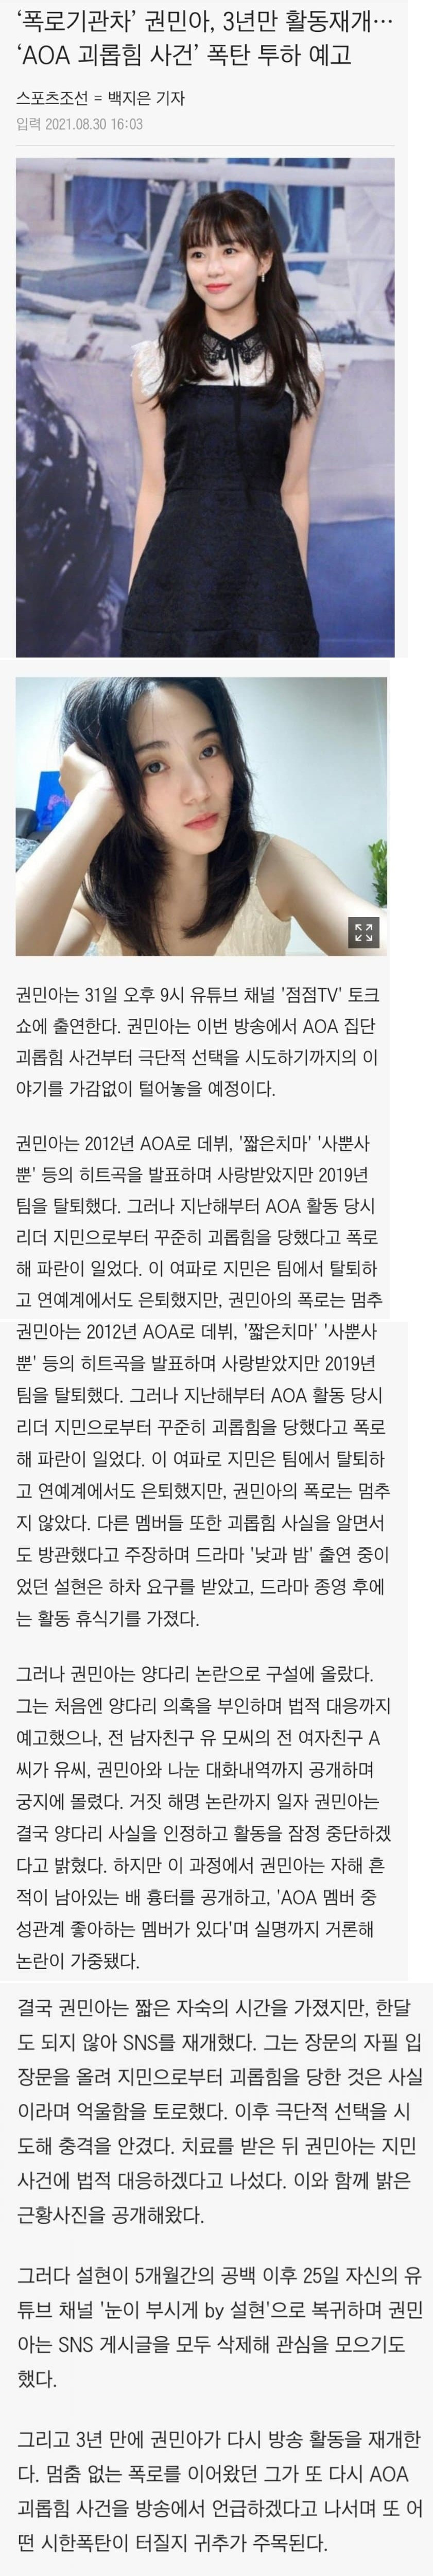 썸네일-권민아 3년만에 활동재개 선언, AOA 괴롭힘 사건 폭로 예고-이미지